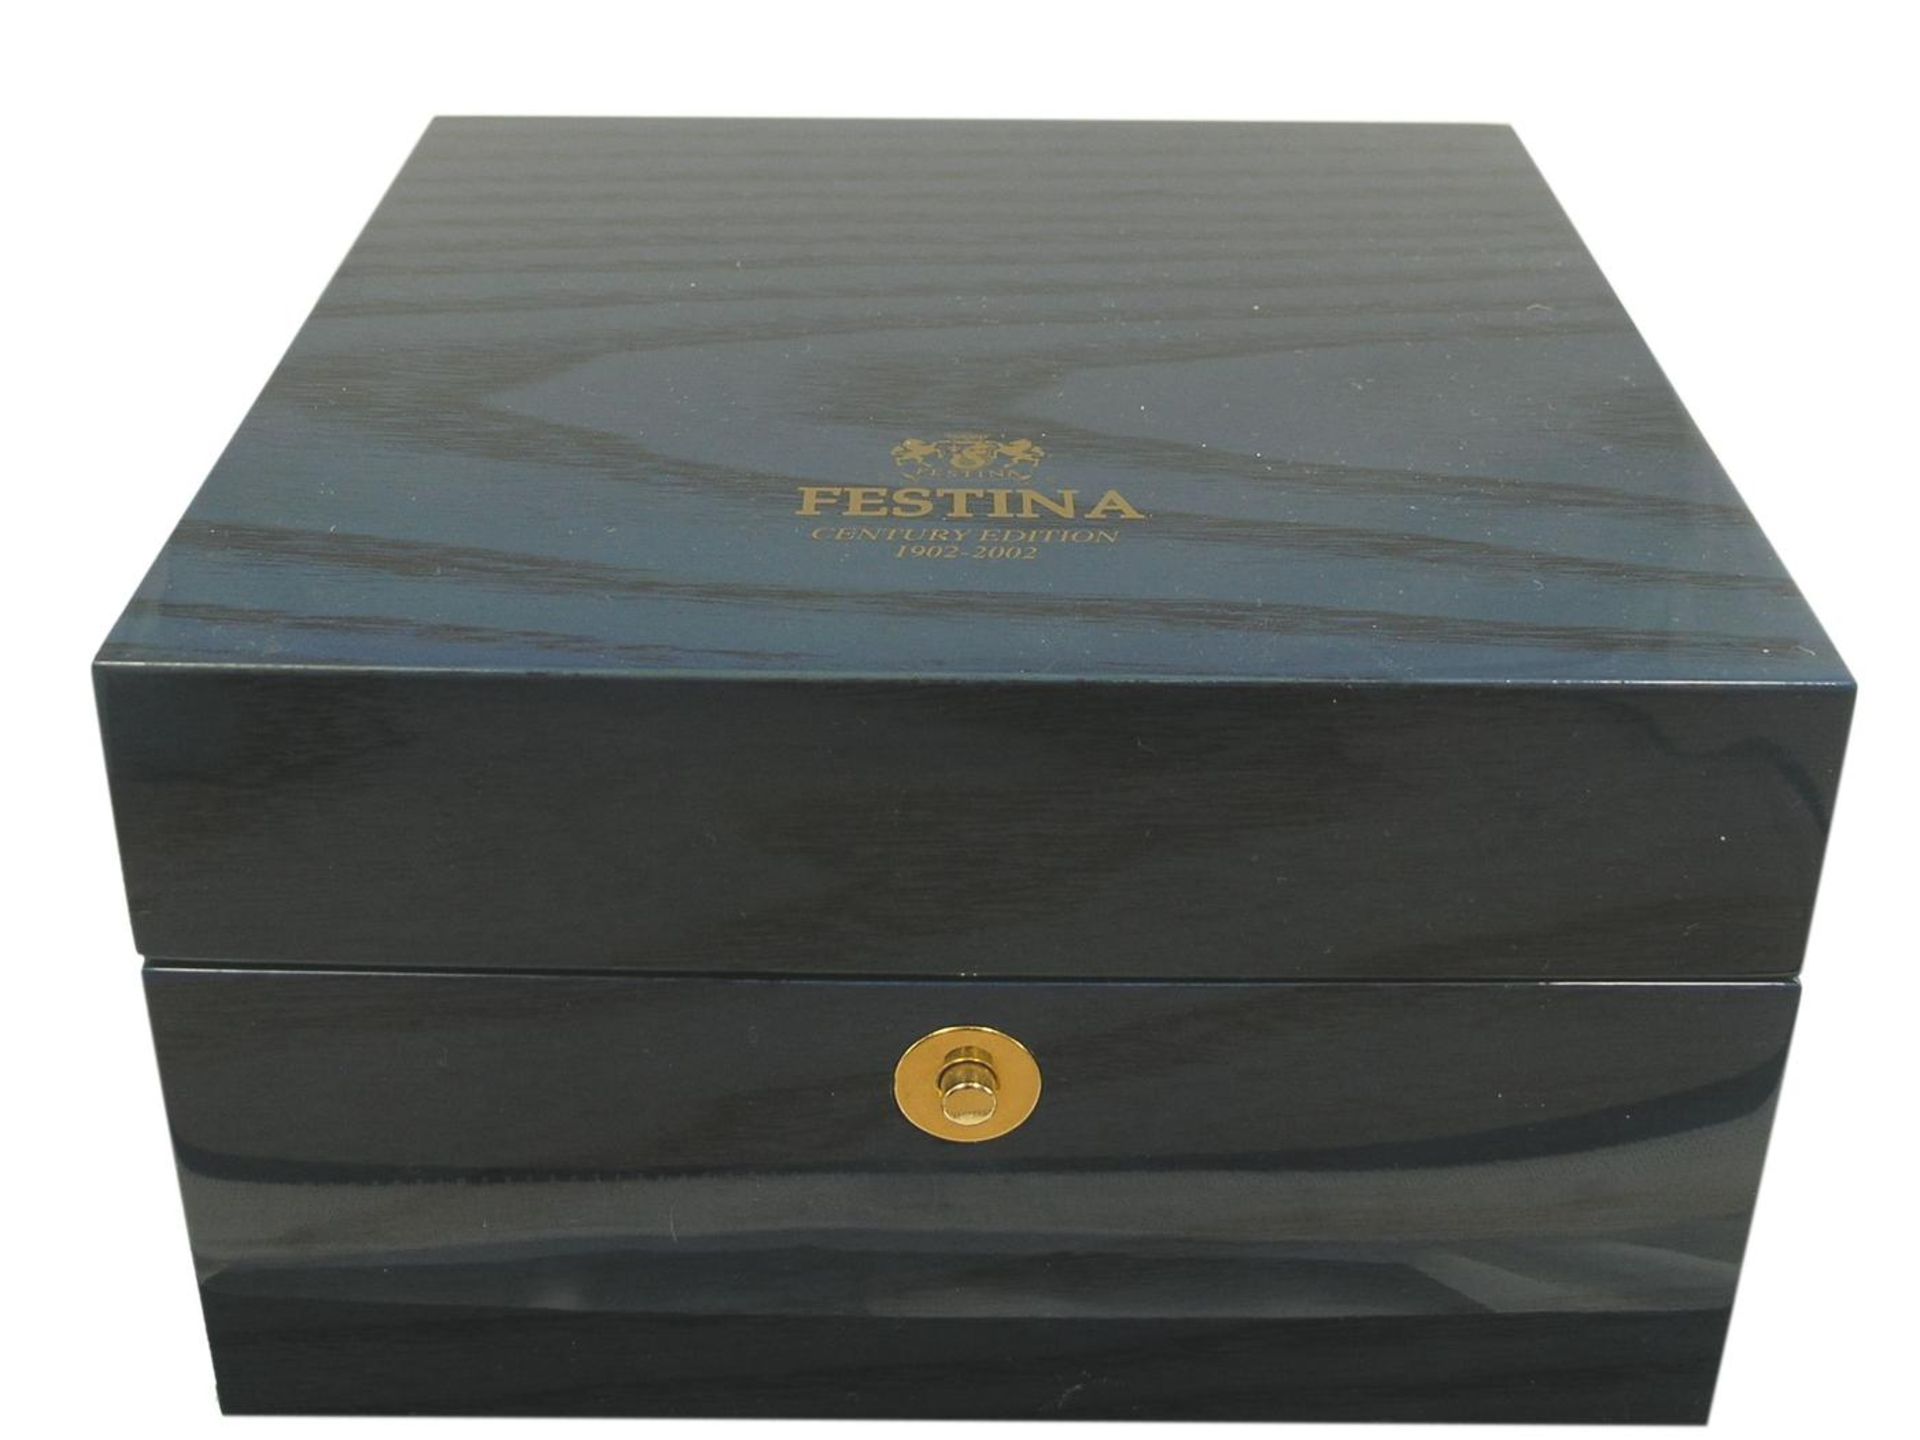 Armbanduhr: Herrenuhr von Festina "Worldtime Century Edition 1902-2002", mit Originalbox, - Bild 2 aus 2